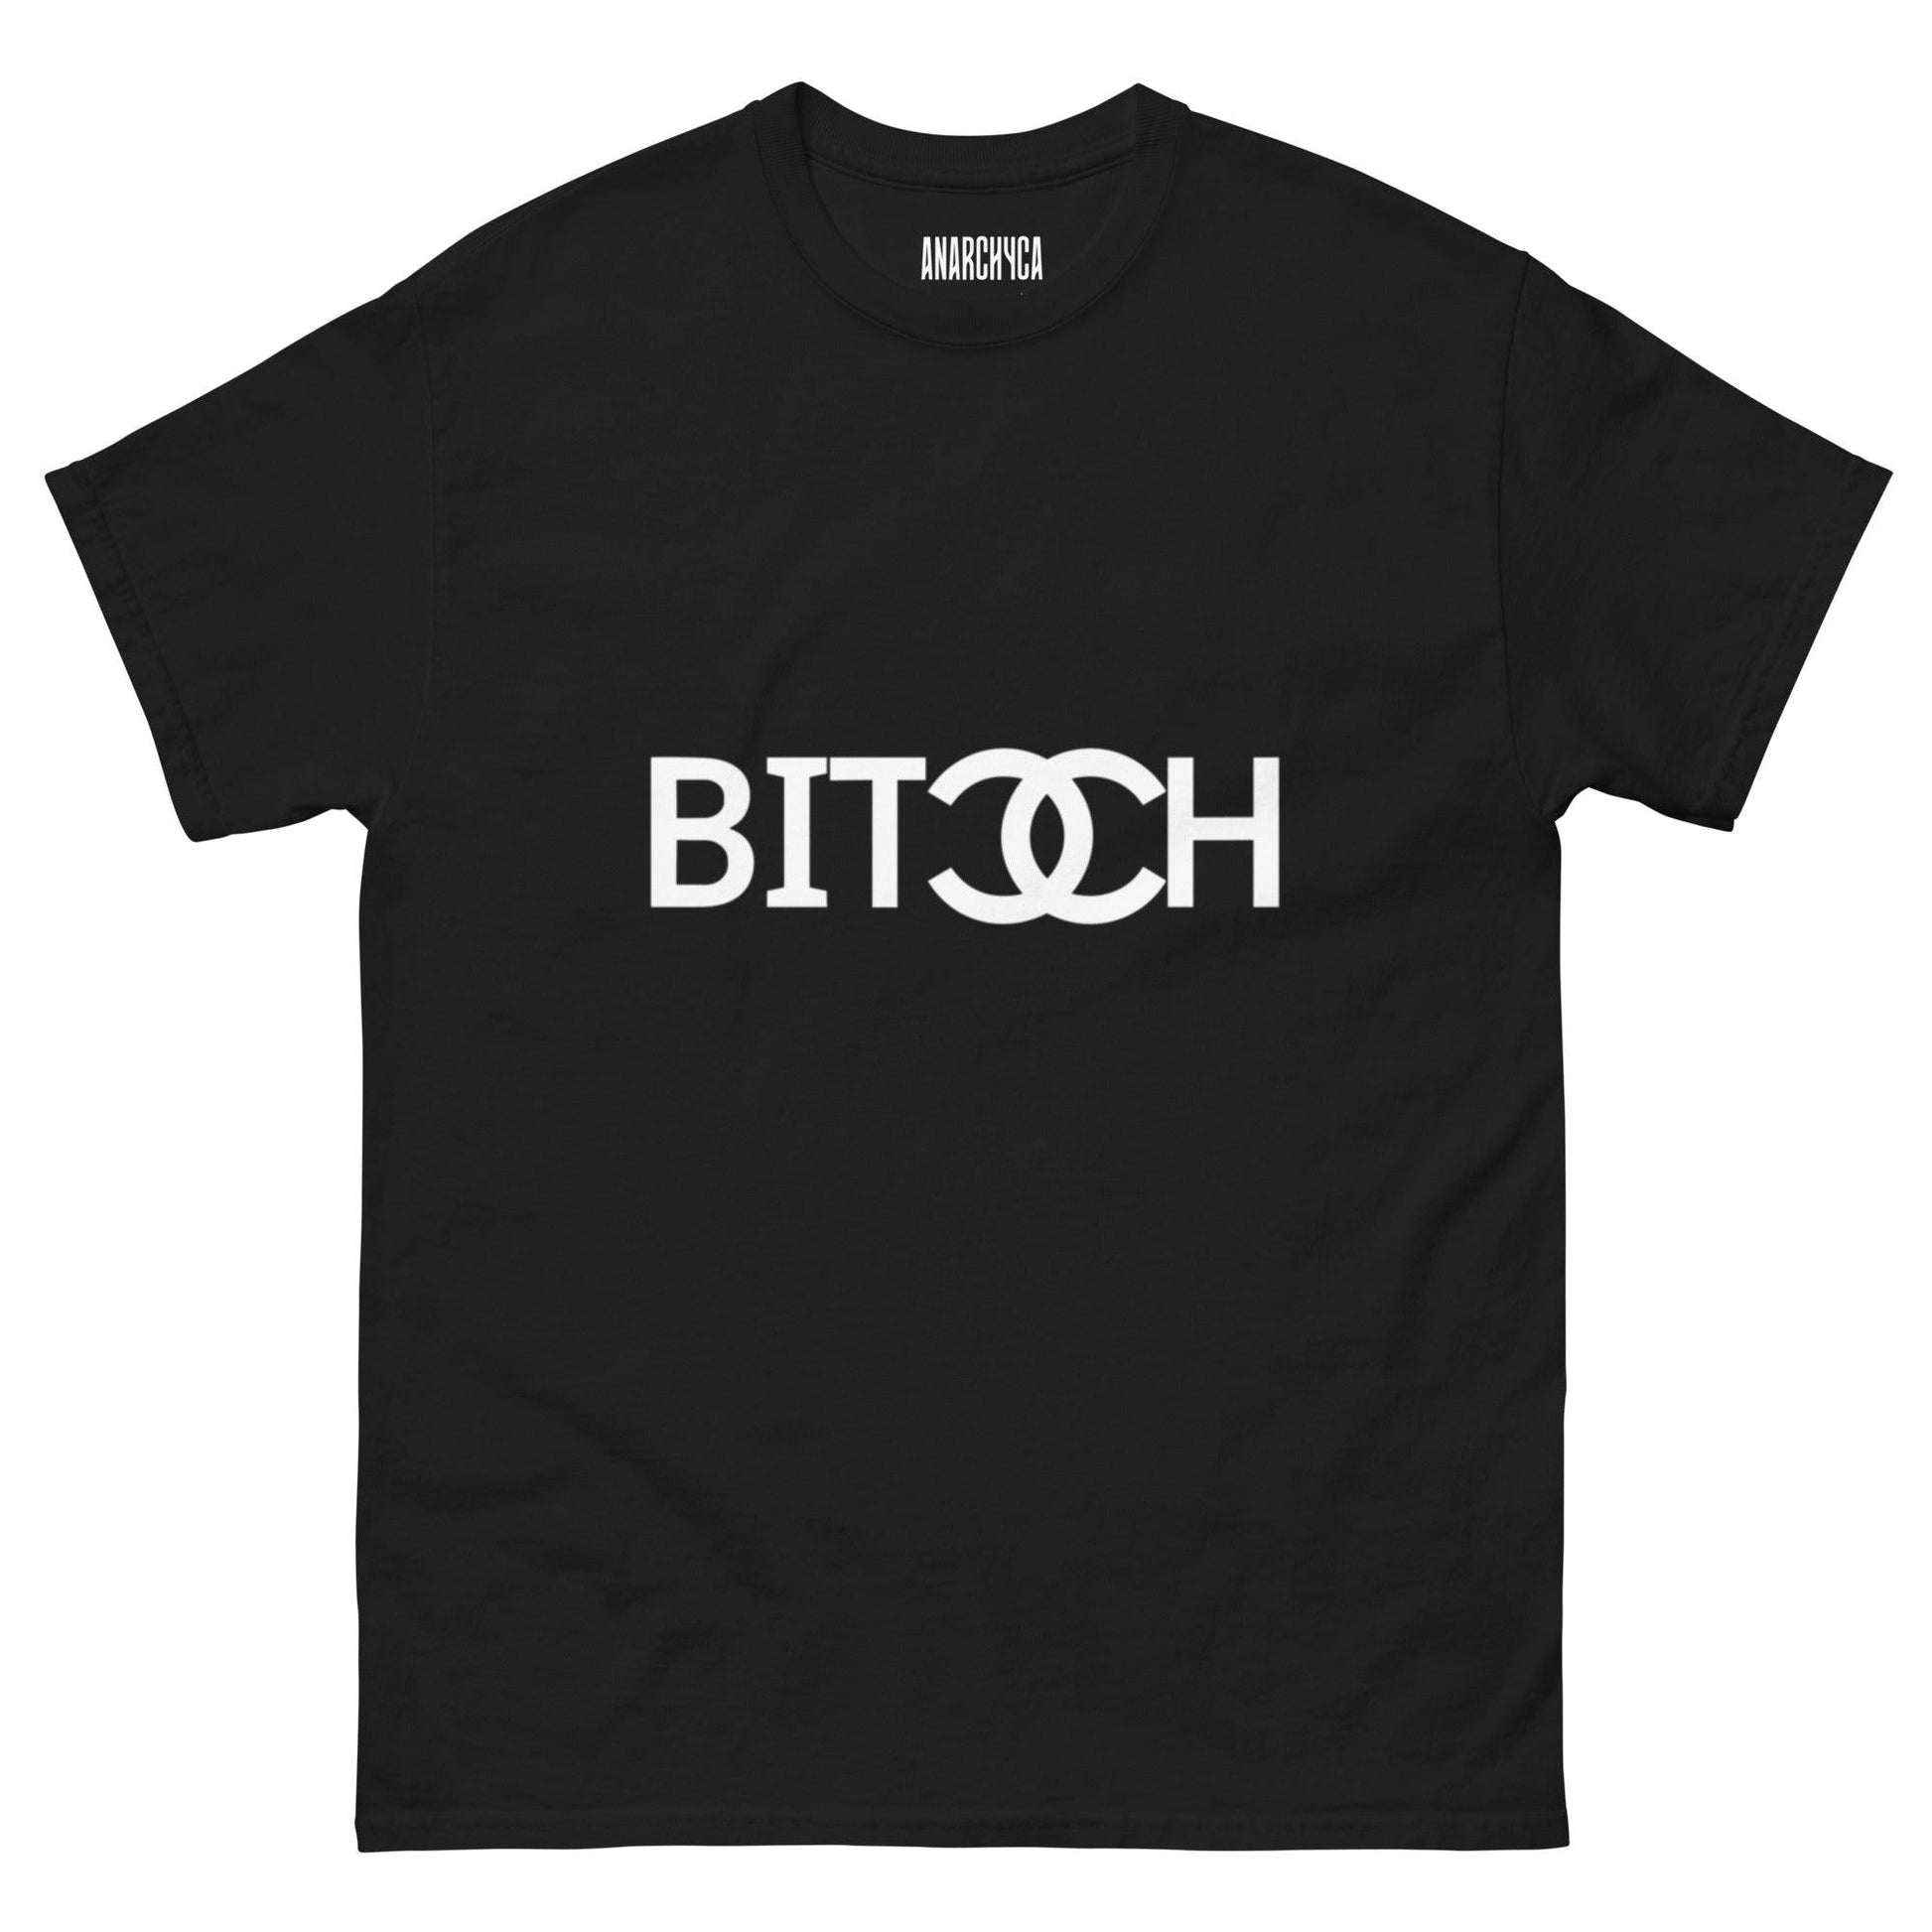 B*TCH - Anarchyca-clothing